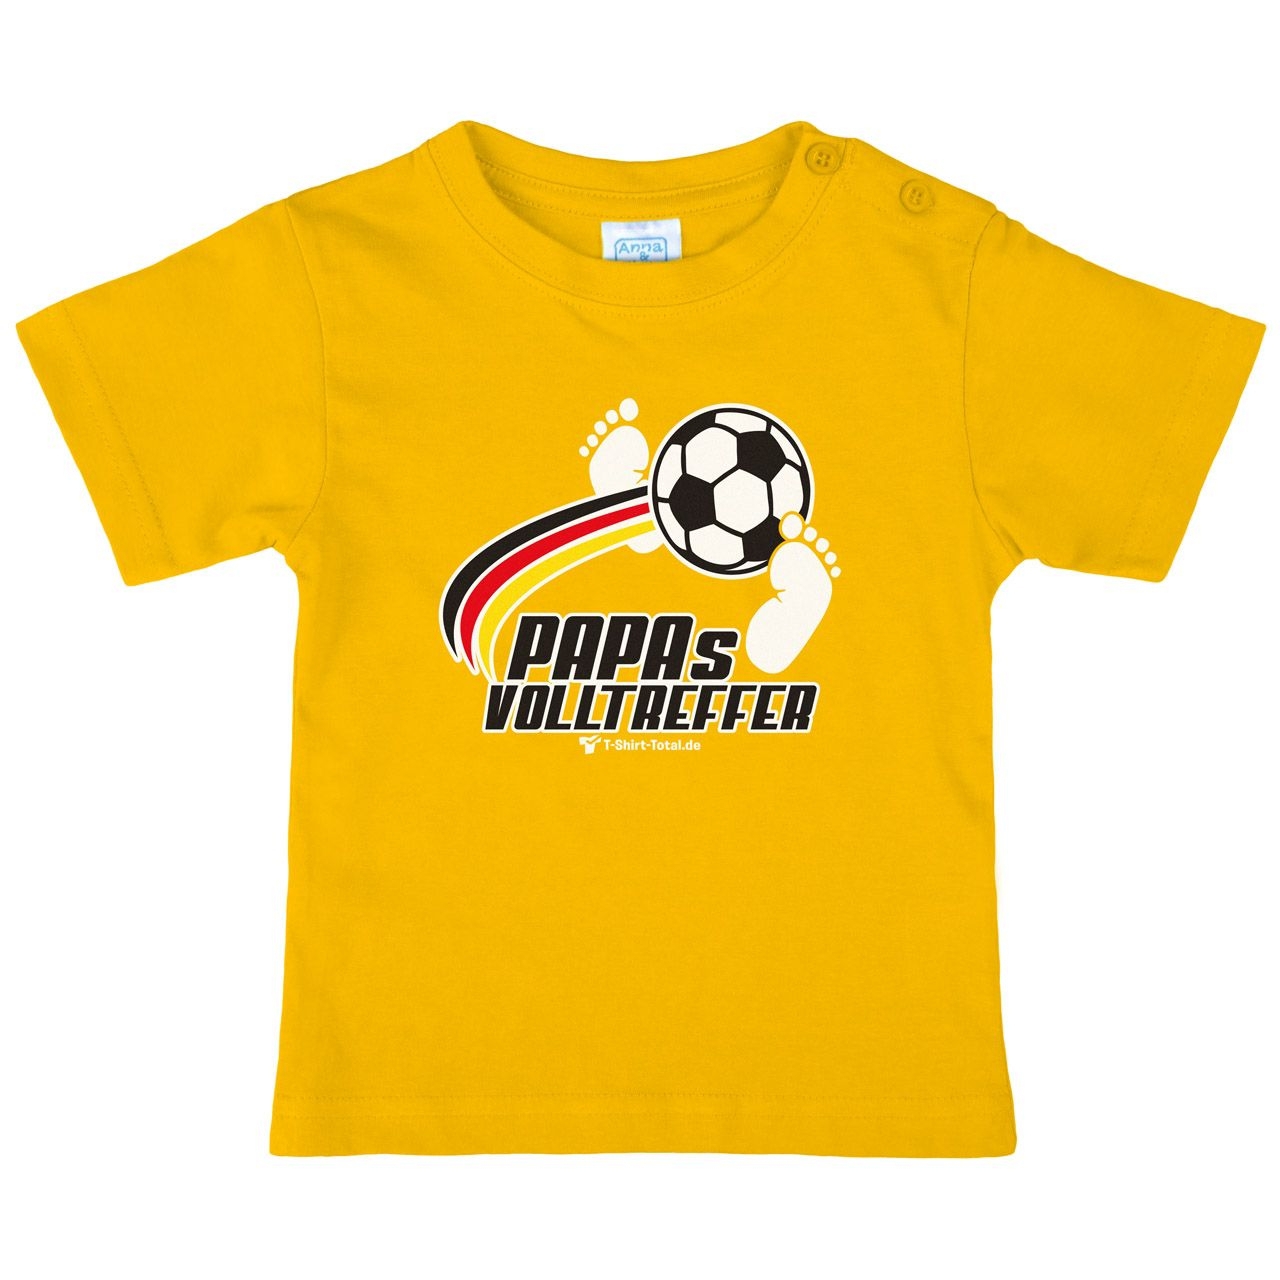 Papas Volltreffer Kinder T-Shirt gelb 56 / 62